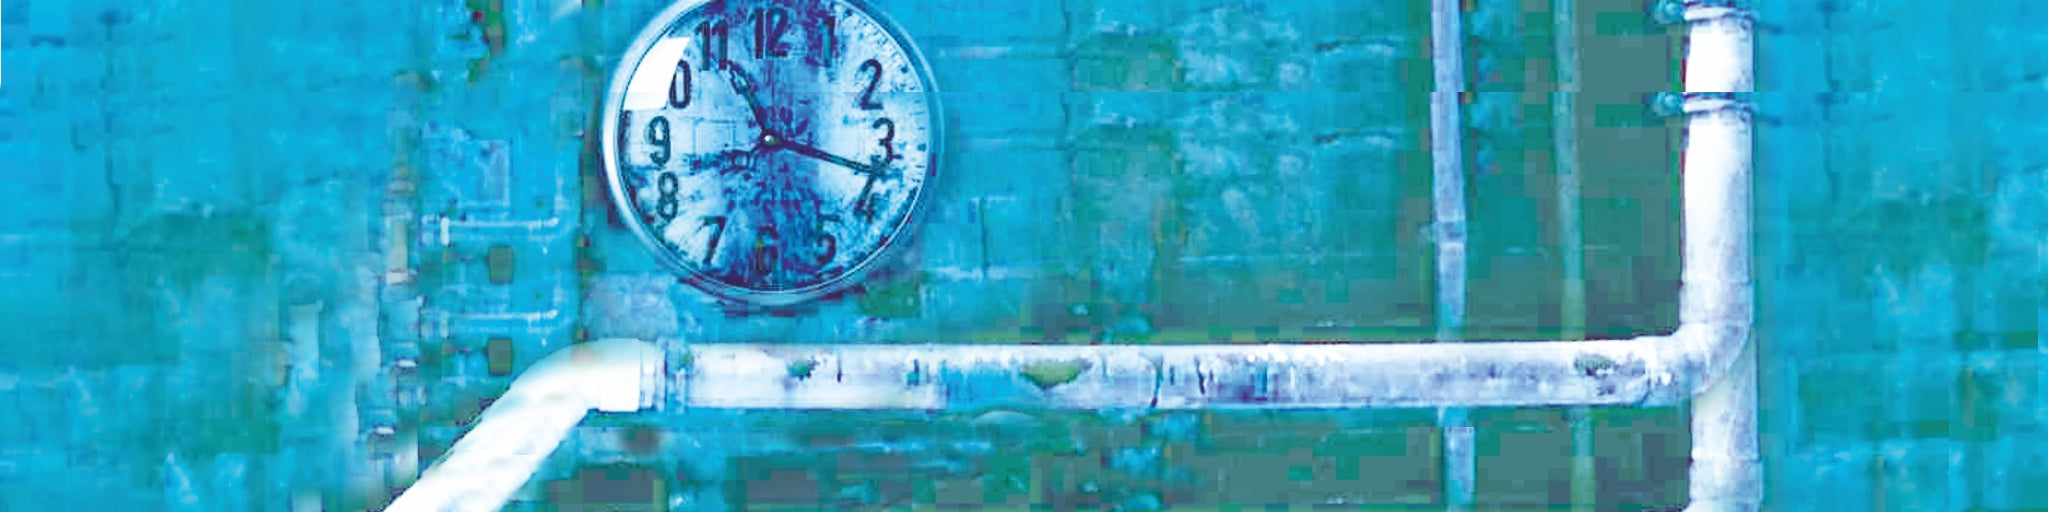 Wasserleitung auf blauer Wand und Wanduhr